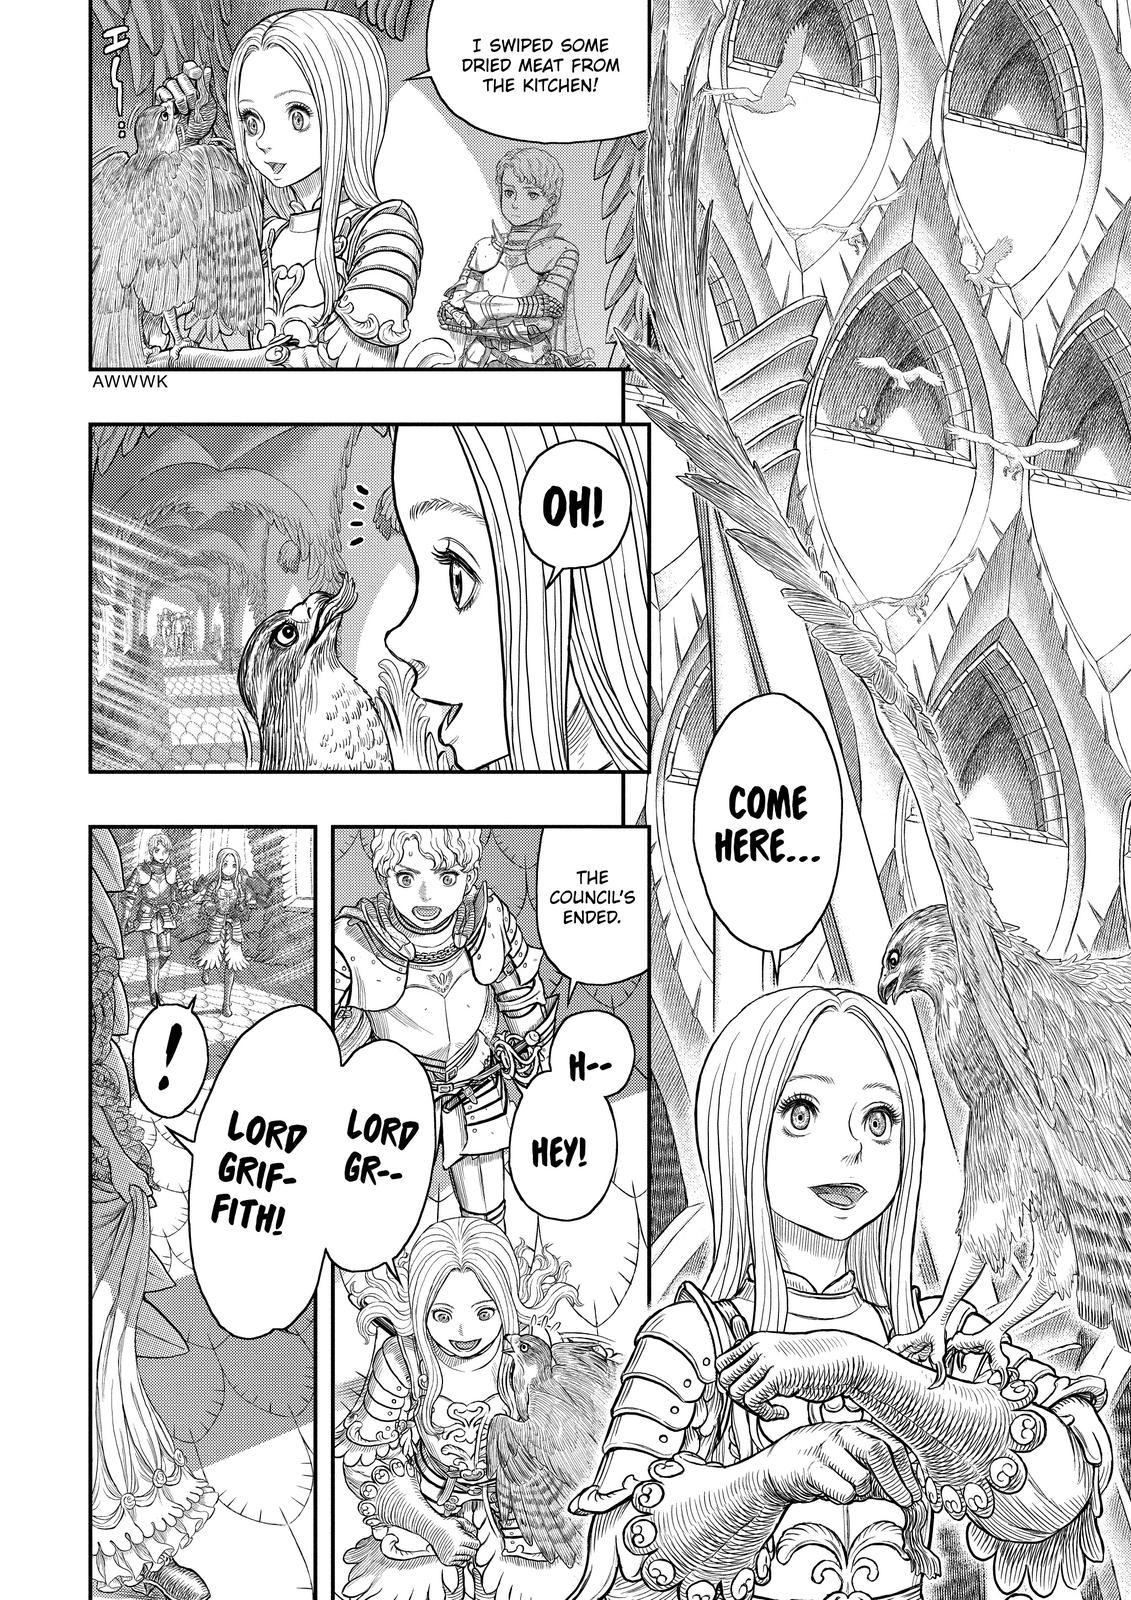 Berserk Manga Chapter 358 image 25